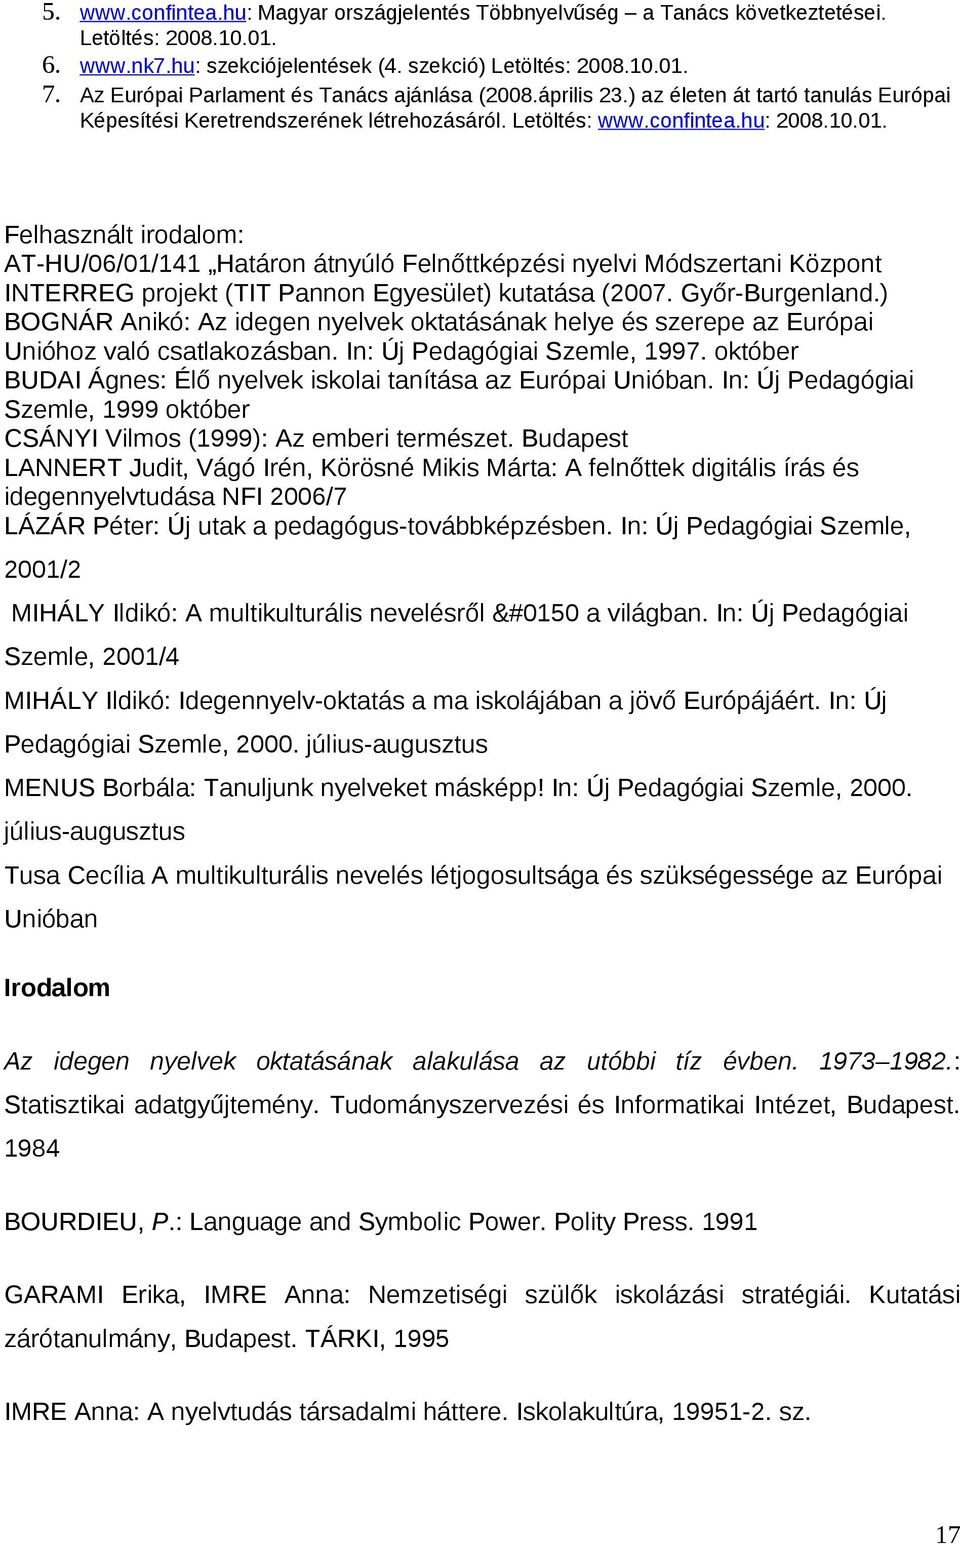 Felhasznált irodalom: AT-HU/06/01/141 Határon átnyúló Felnőttképzési nyelvi Módszertani Központ INTERREG projekt (TIT Pannon Egyesület) kutatása (2007. Győr-Burgenland.